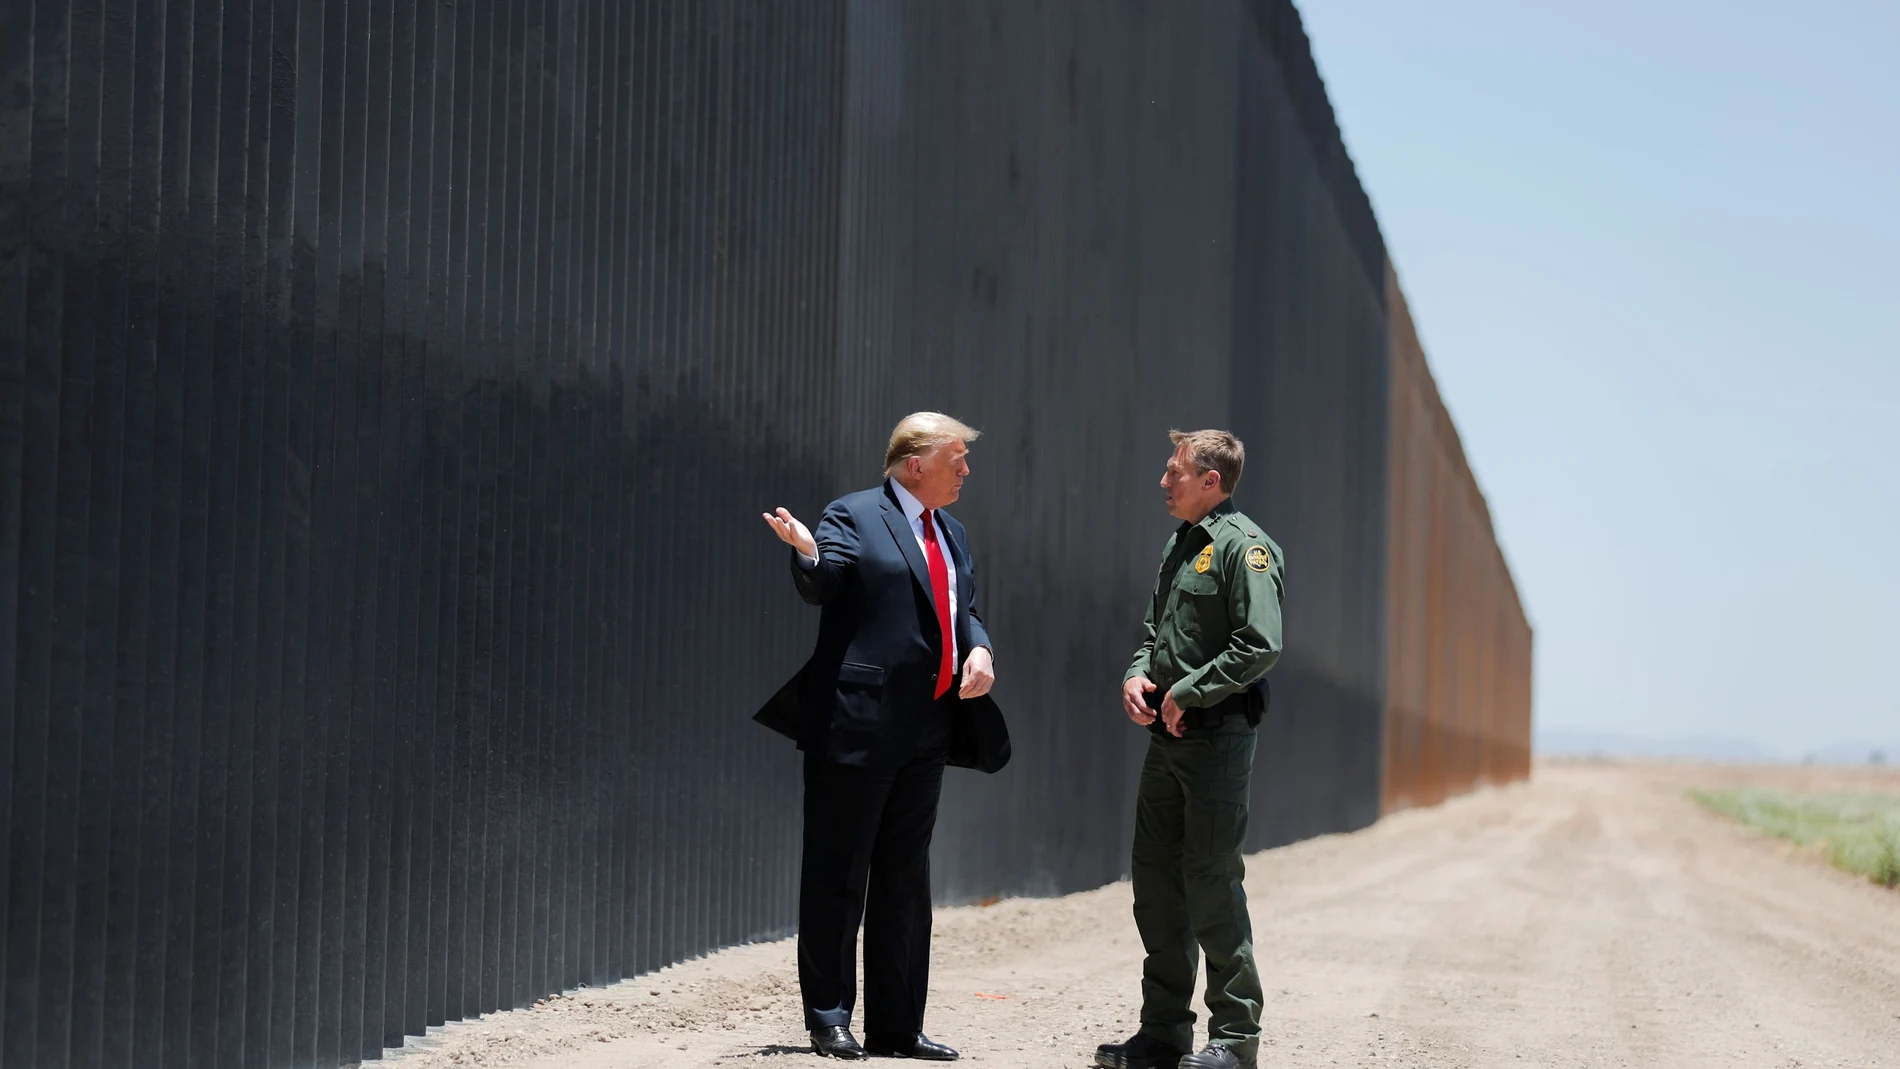 Donald Trump conversa con el jefe de la patrulla policial Rodney Scott durante una visita a la frontera.